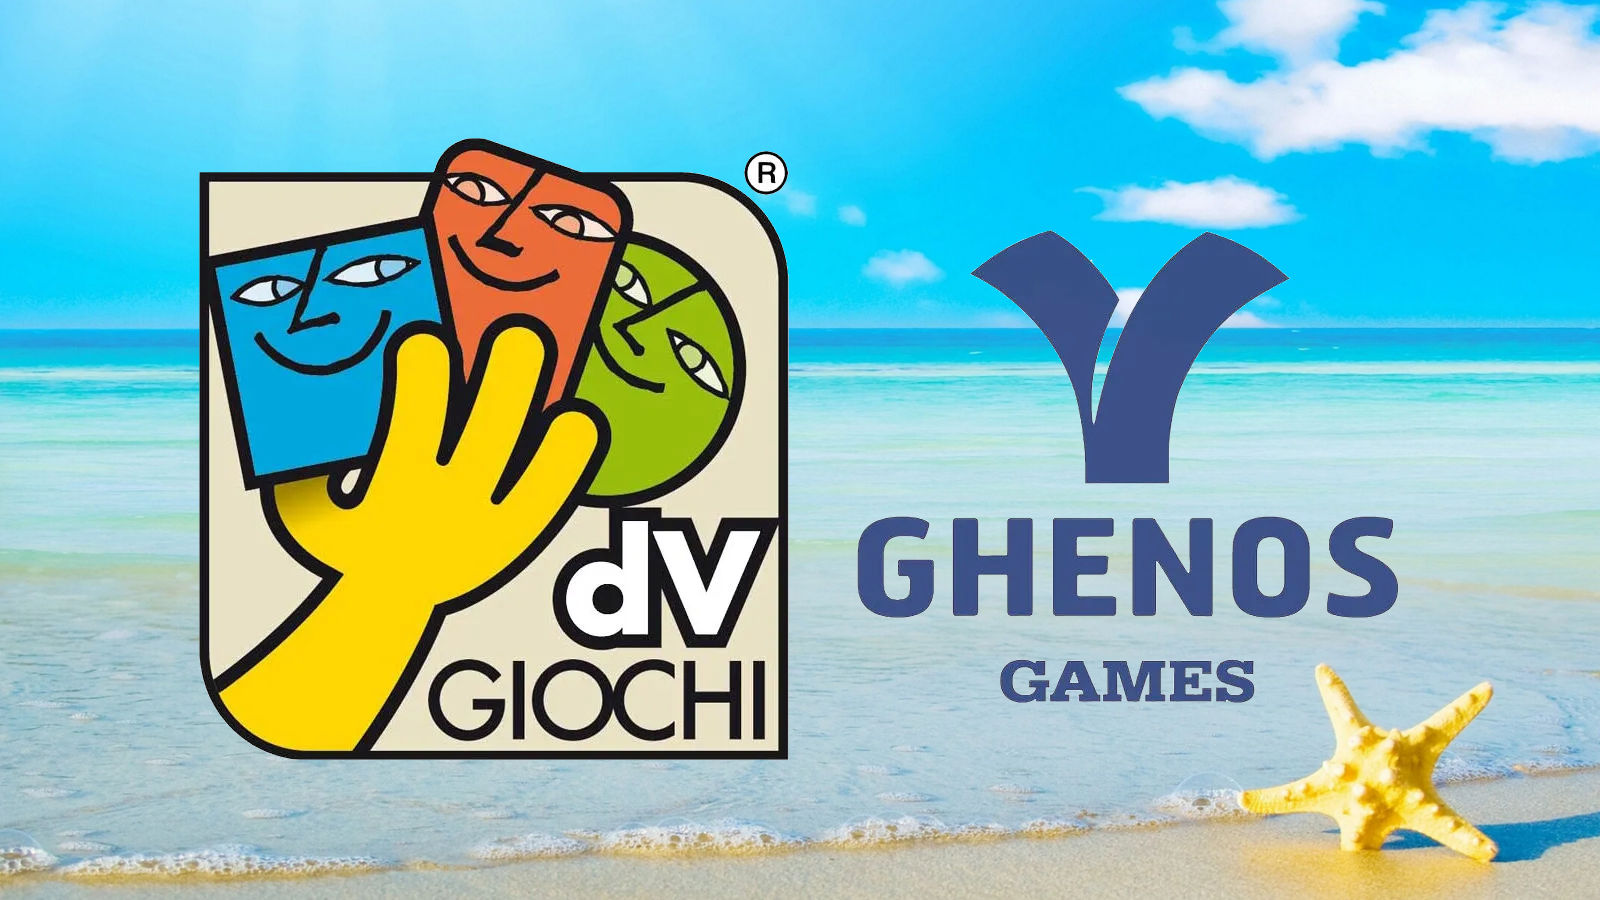 Le novità per l’estate 2022 di DV Games e Ghenos Games